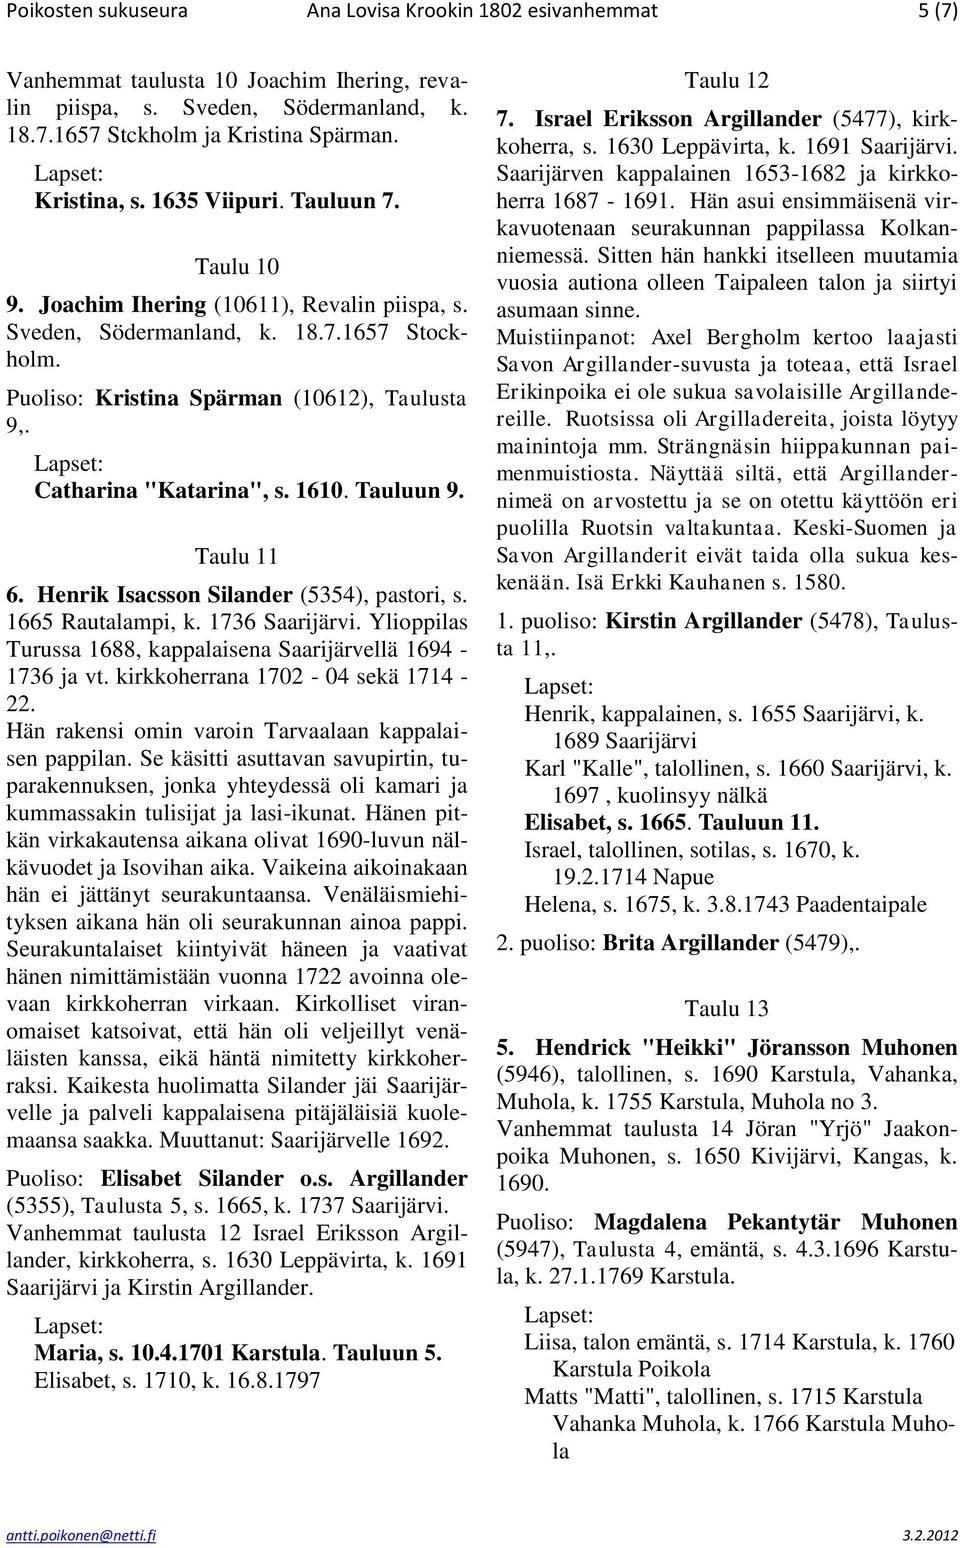 1610. Tauluun 9. Taulu 11 6. Henrik Isacsson Silander (5354), pastori, s. 1665 Rautalampi, k. 1736 Saarijärvi. Ylioppilas Turussa 1688, kappalaisena Saarijärvellä 1694-1736 ja vt.